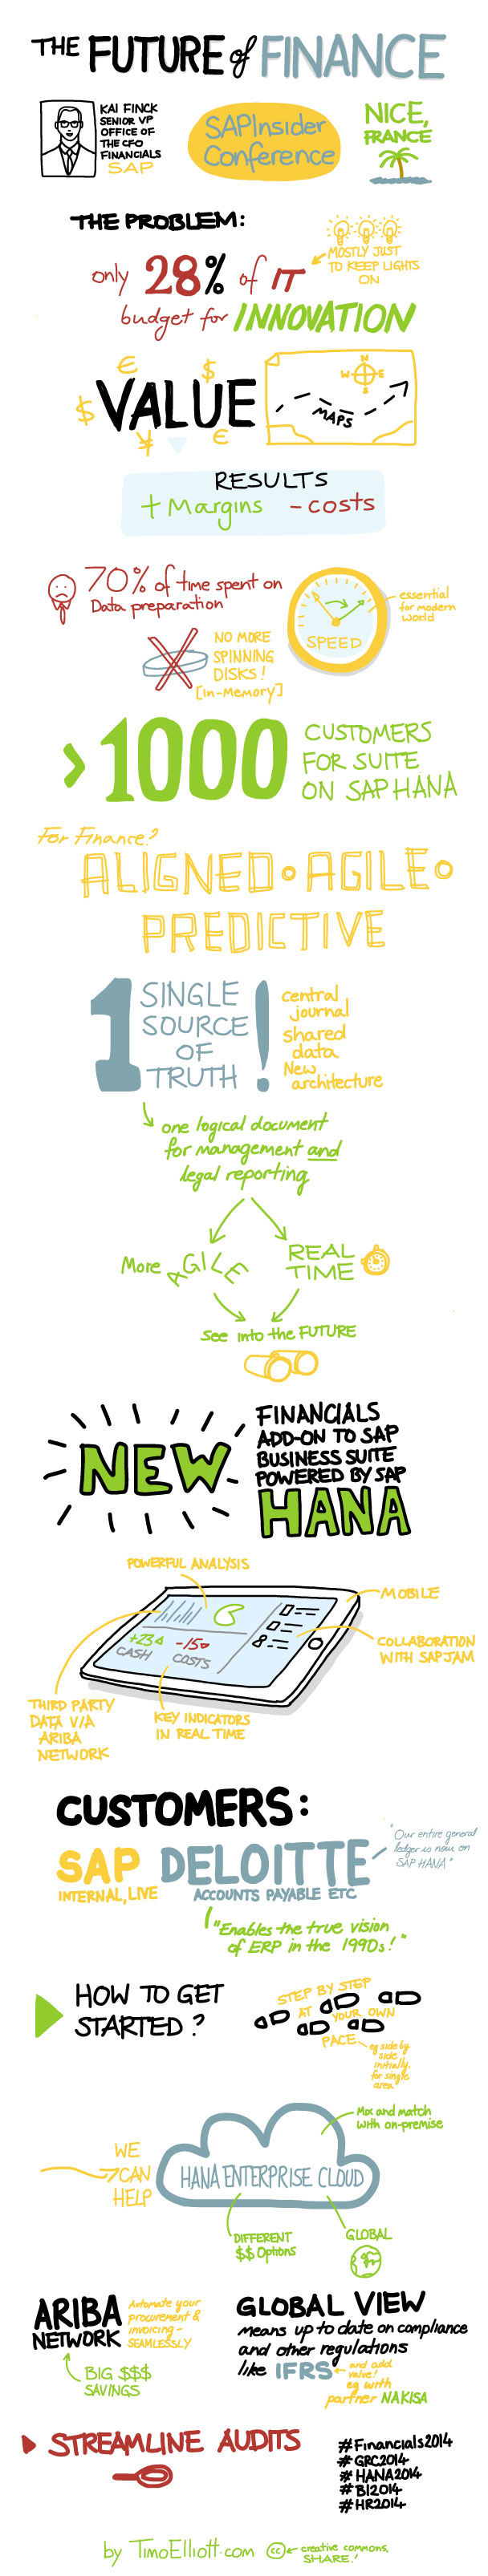 financials-2014-keynote-sketchnote-long.jpg